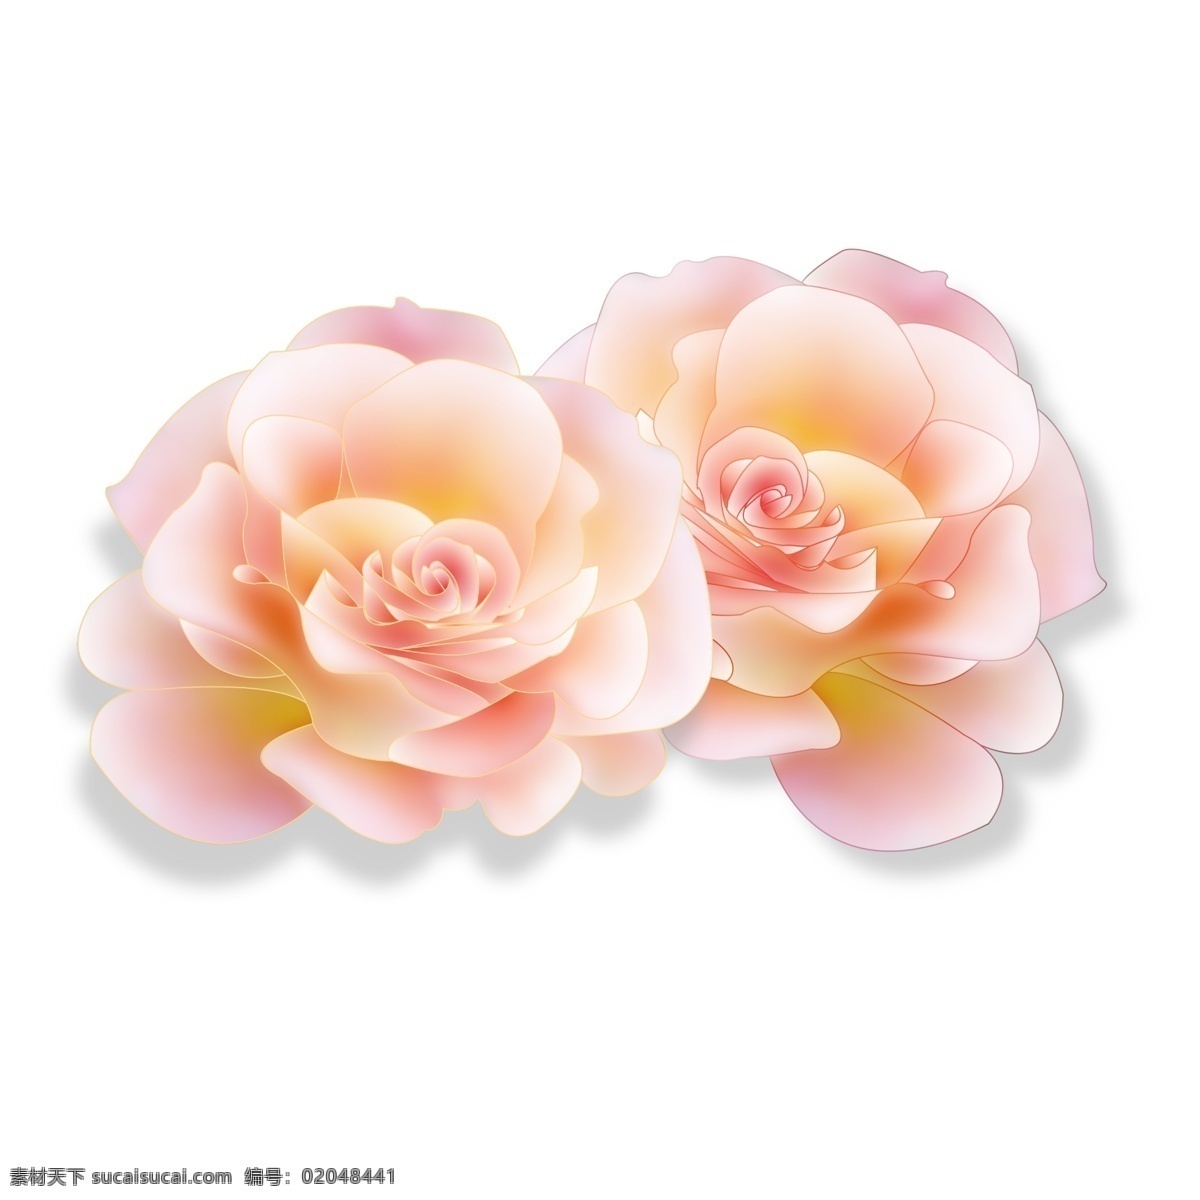 粉红色 两 朵 小花 插画 高贵 送女友 装饰 艺术 美丽 可爱 春天 香味扑鼻 春暖花开